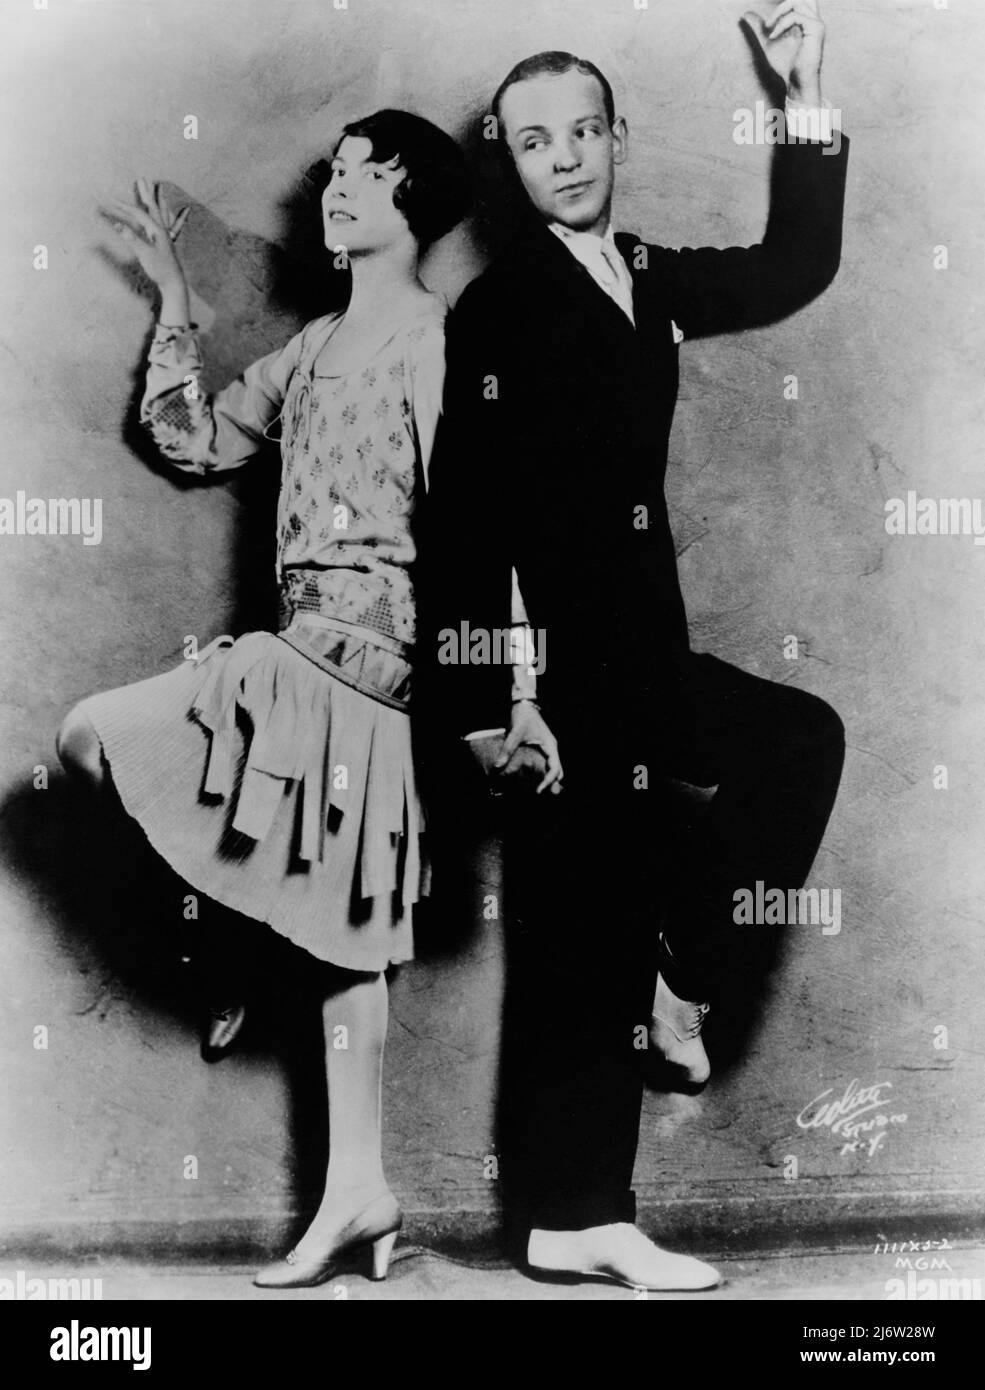 Frederick Austerlitz (1899-1987), más conocido como Fred Astaire, Actor, Cantante, coreógrafo y bailarín, y Adele Marie Austerlitz (1896-1981), conocida como Adele Astaire, bailarina y actriz estadounidense, hermana y pareja de Baile de Fred Astaire, en una escena de la película Lady Be Good. Año 1924. Stockfoto